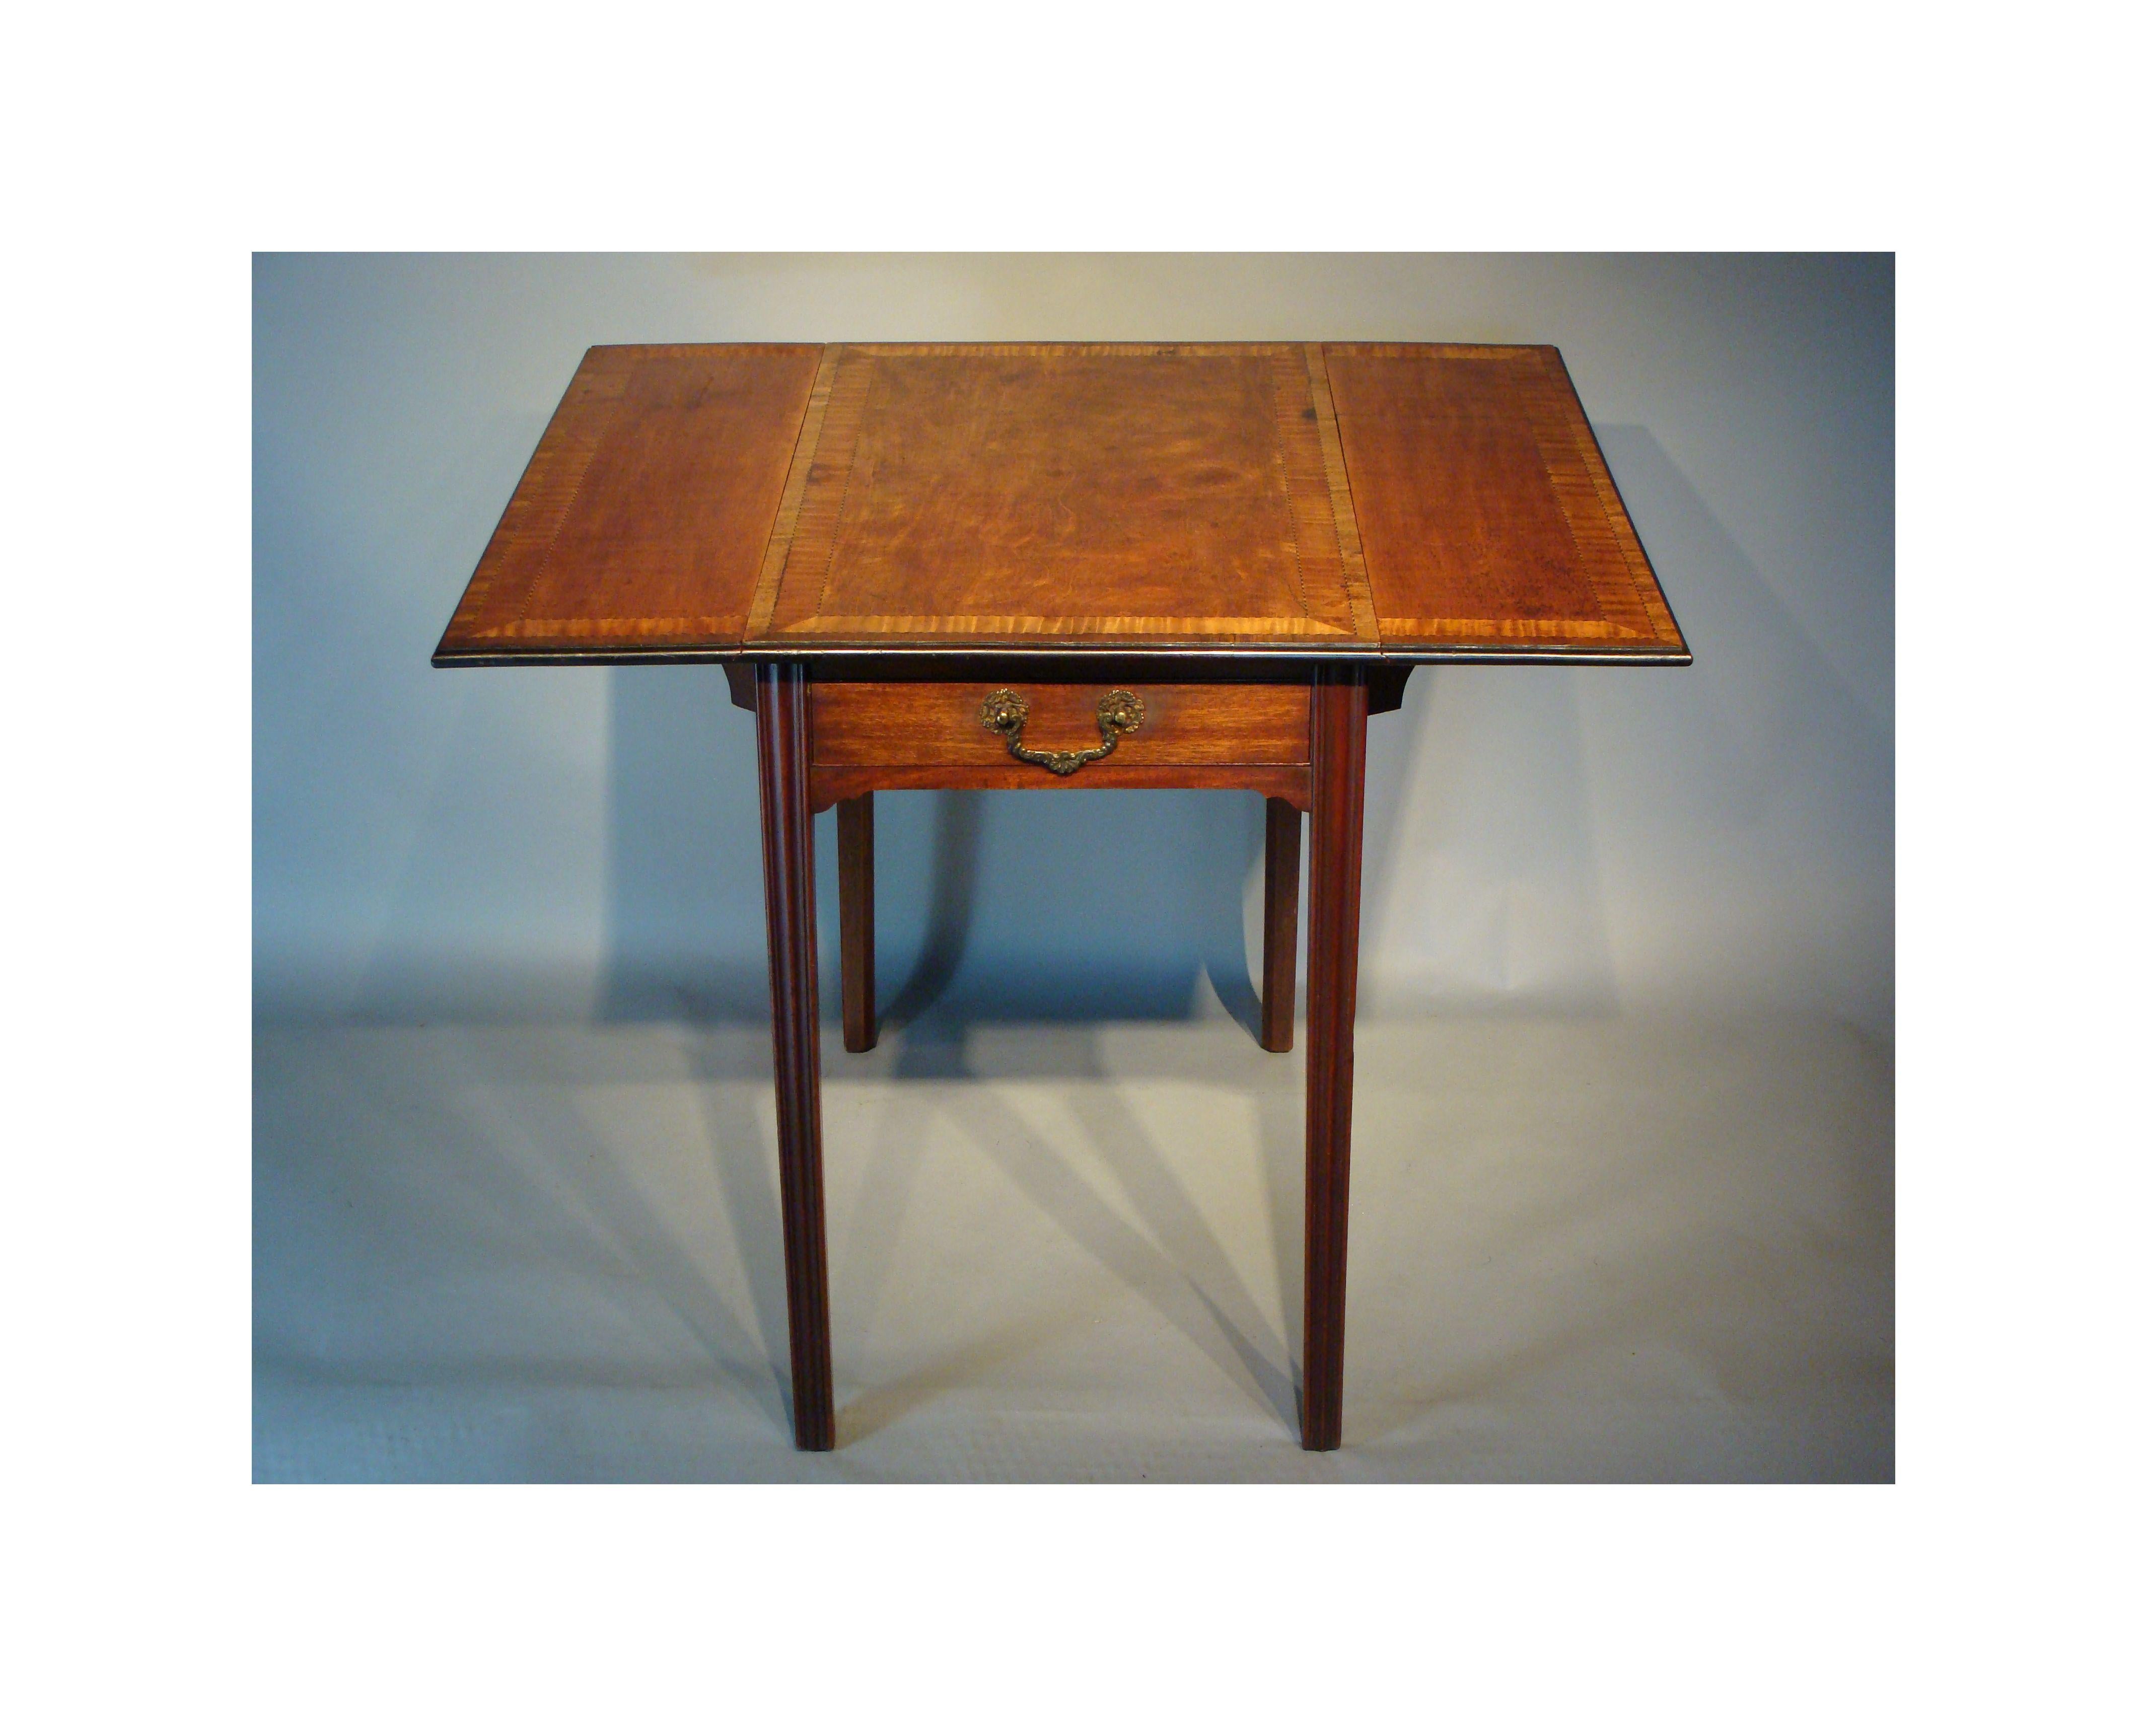 Ein Pembroke-Tisch aus Satinholz des späten 18. Jahrhunderts von sehr guter, reicher Farbe. 
Zeitalter von George III.

Die Decke ist mit Satinholz geflochten und mit feinen Rauten aus Ebenholz eingefasst.
Die Kanten sind ebonisiert und mit